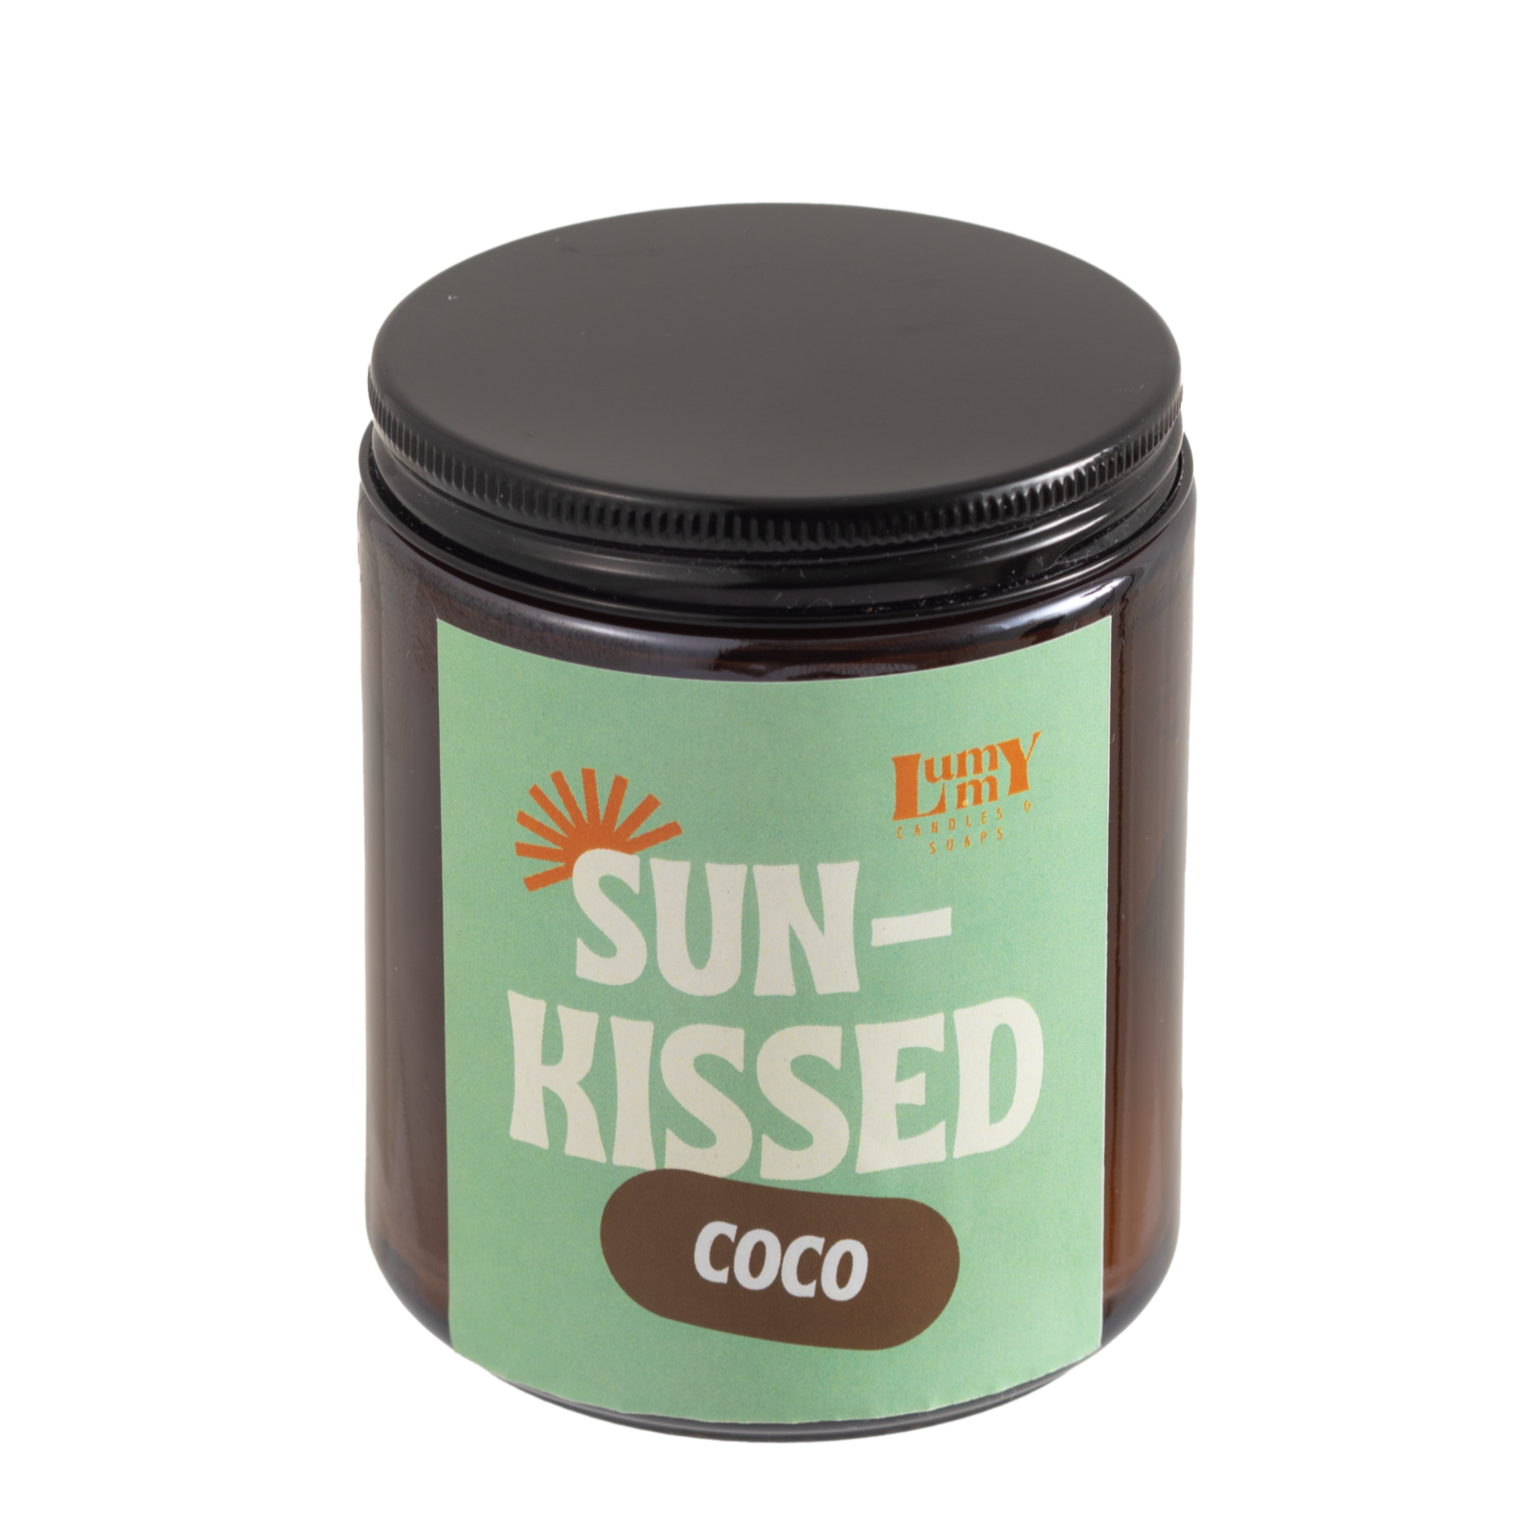 Vela aroma a coco - Sun-Kissed Coco